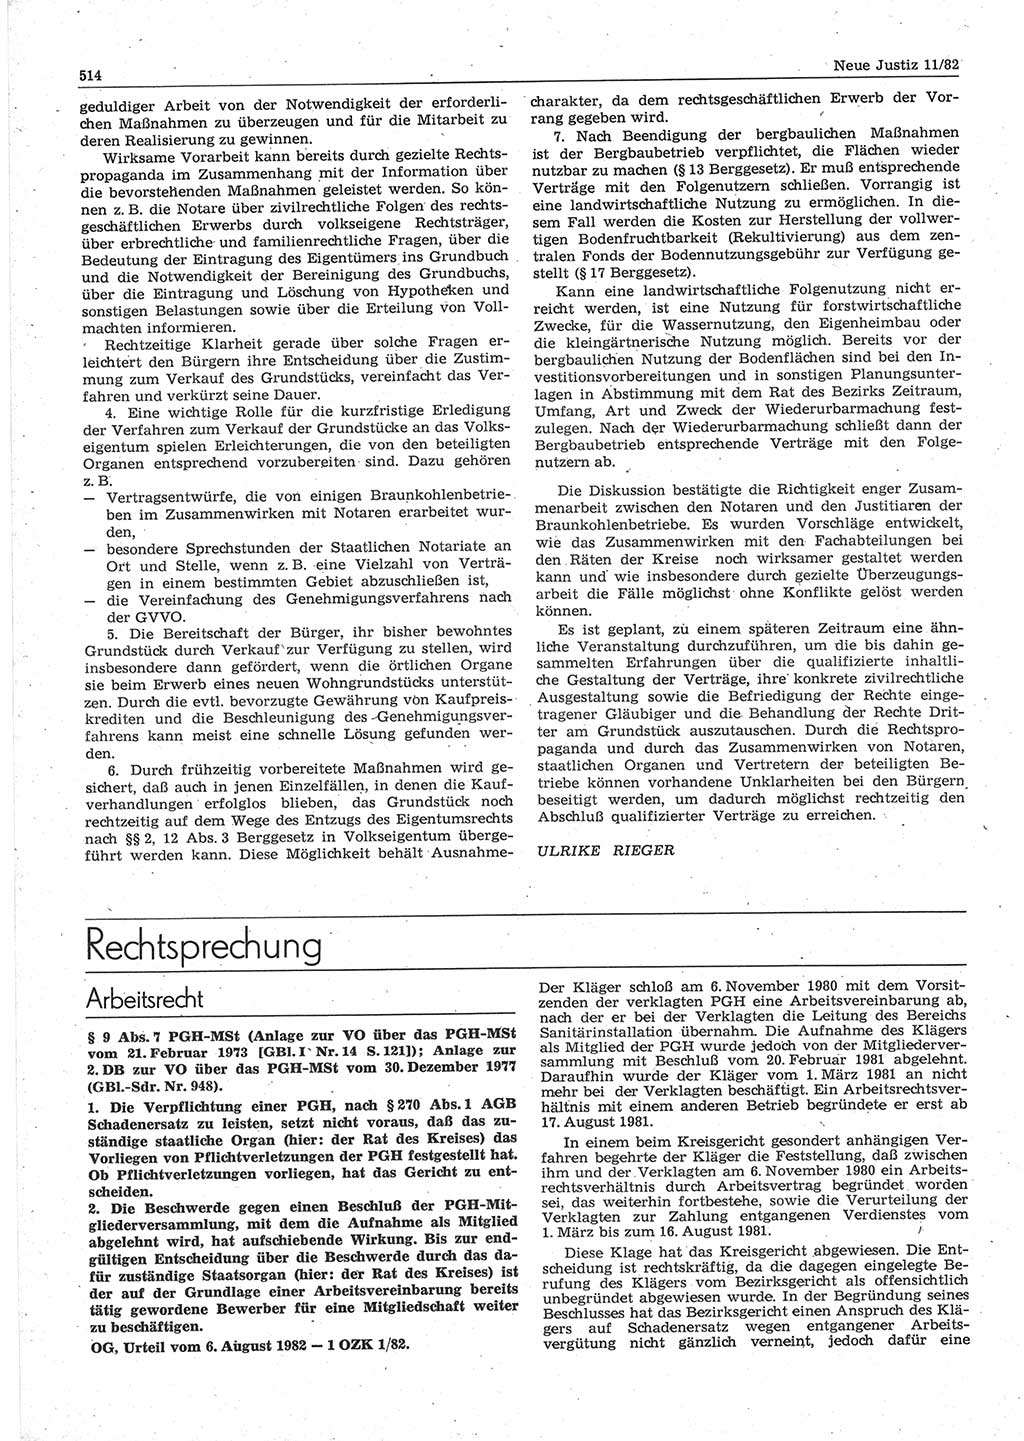 Neue Justiz (NJ), Zeitschrift für sozialistisches Recht und Gesetzlichkeit [Deutsche Demokratische Republik (DDR)], 36. Jahrgang 1982, Seite 514 (NJ DDR 1982, S. 514)